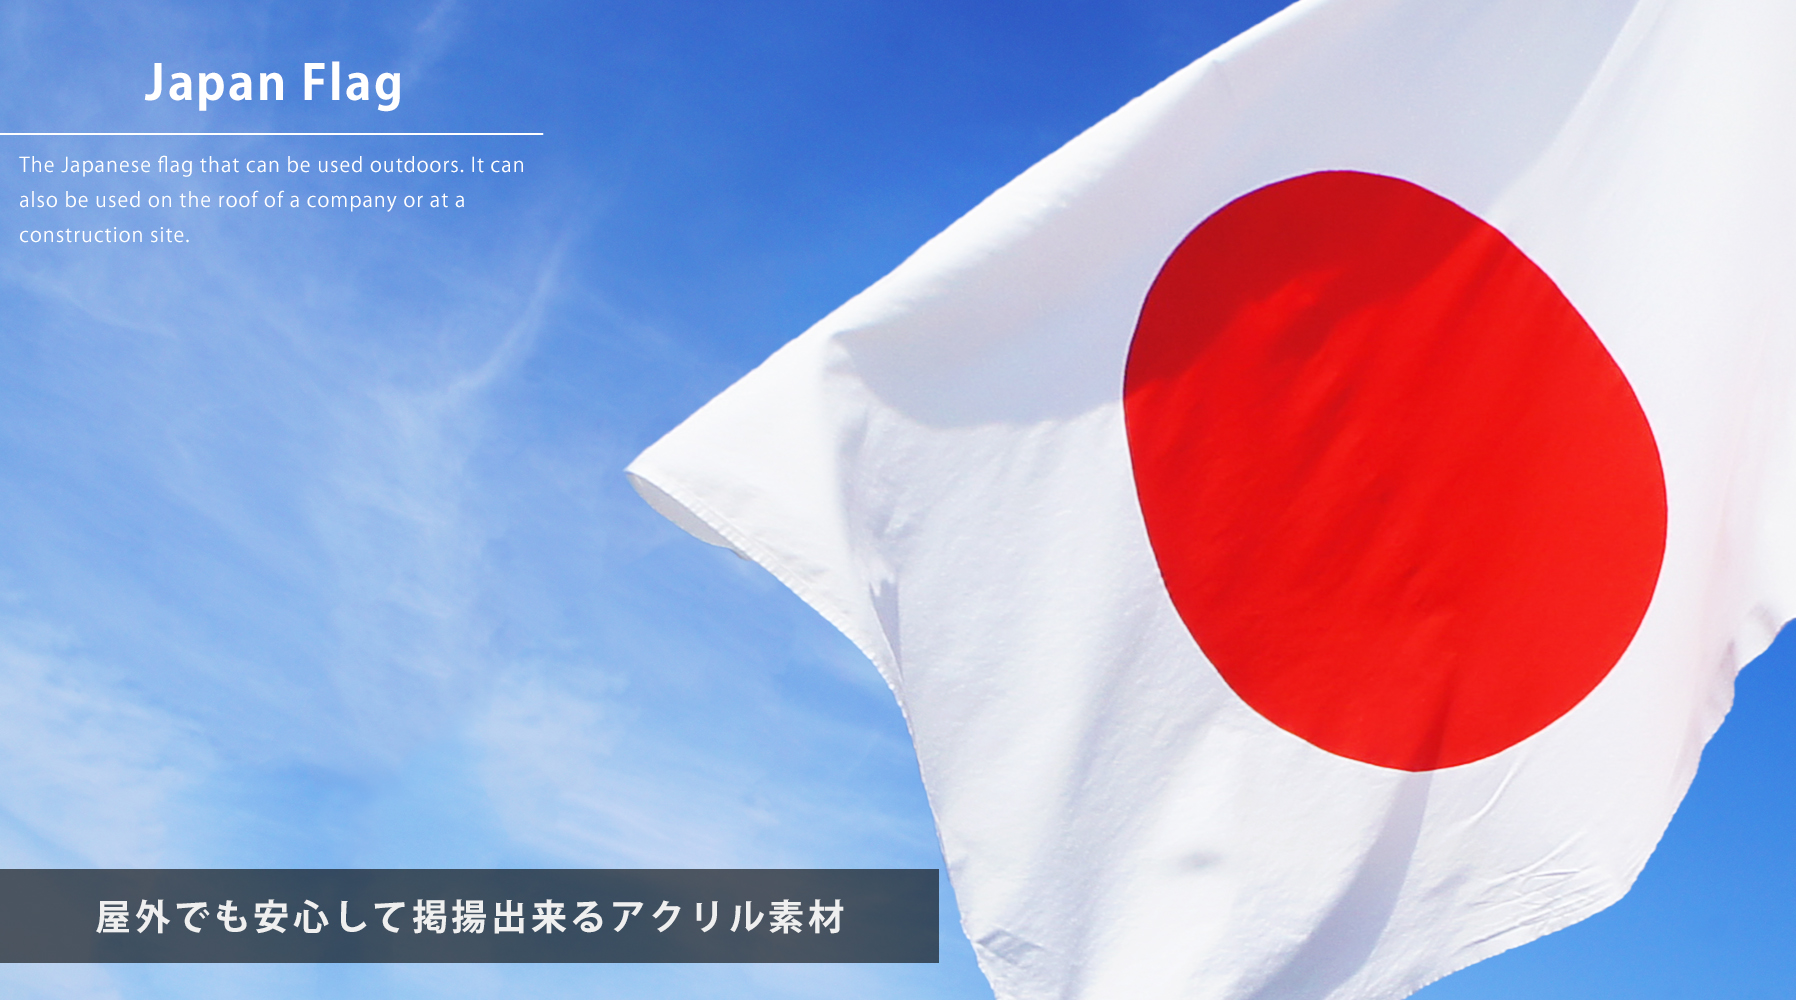 ピックアップ屋外掲揚用本染めエクスラン素材日の丸国旗 J-japan-ekusuran